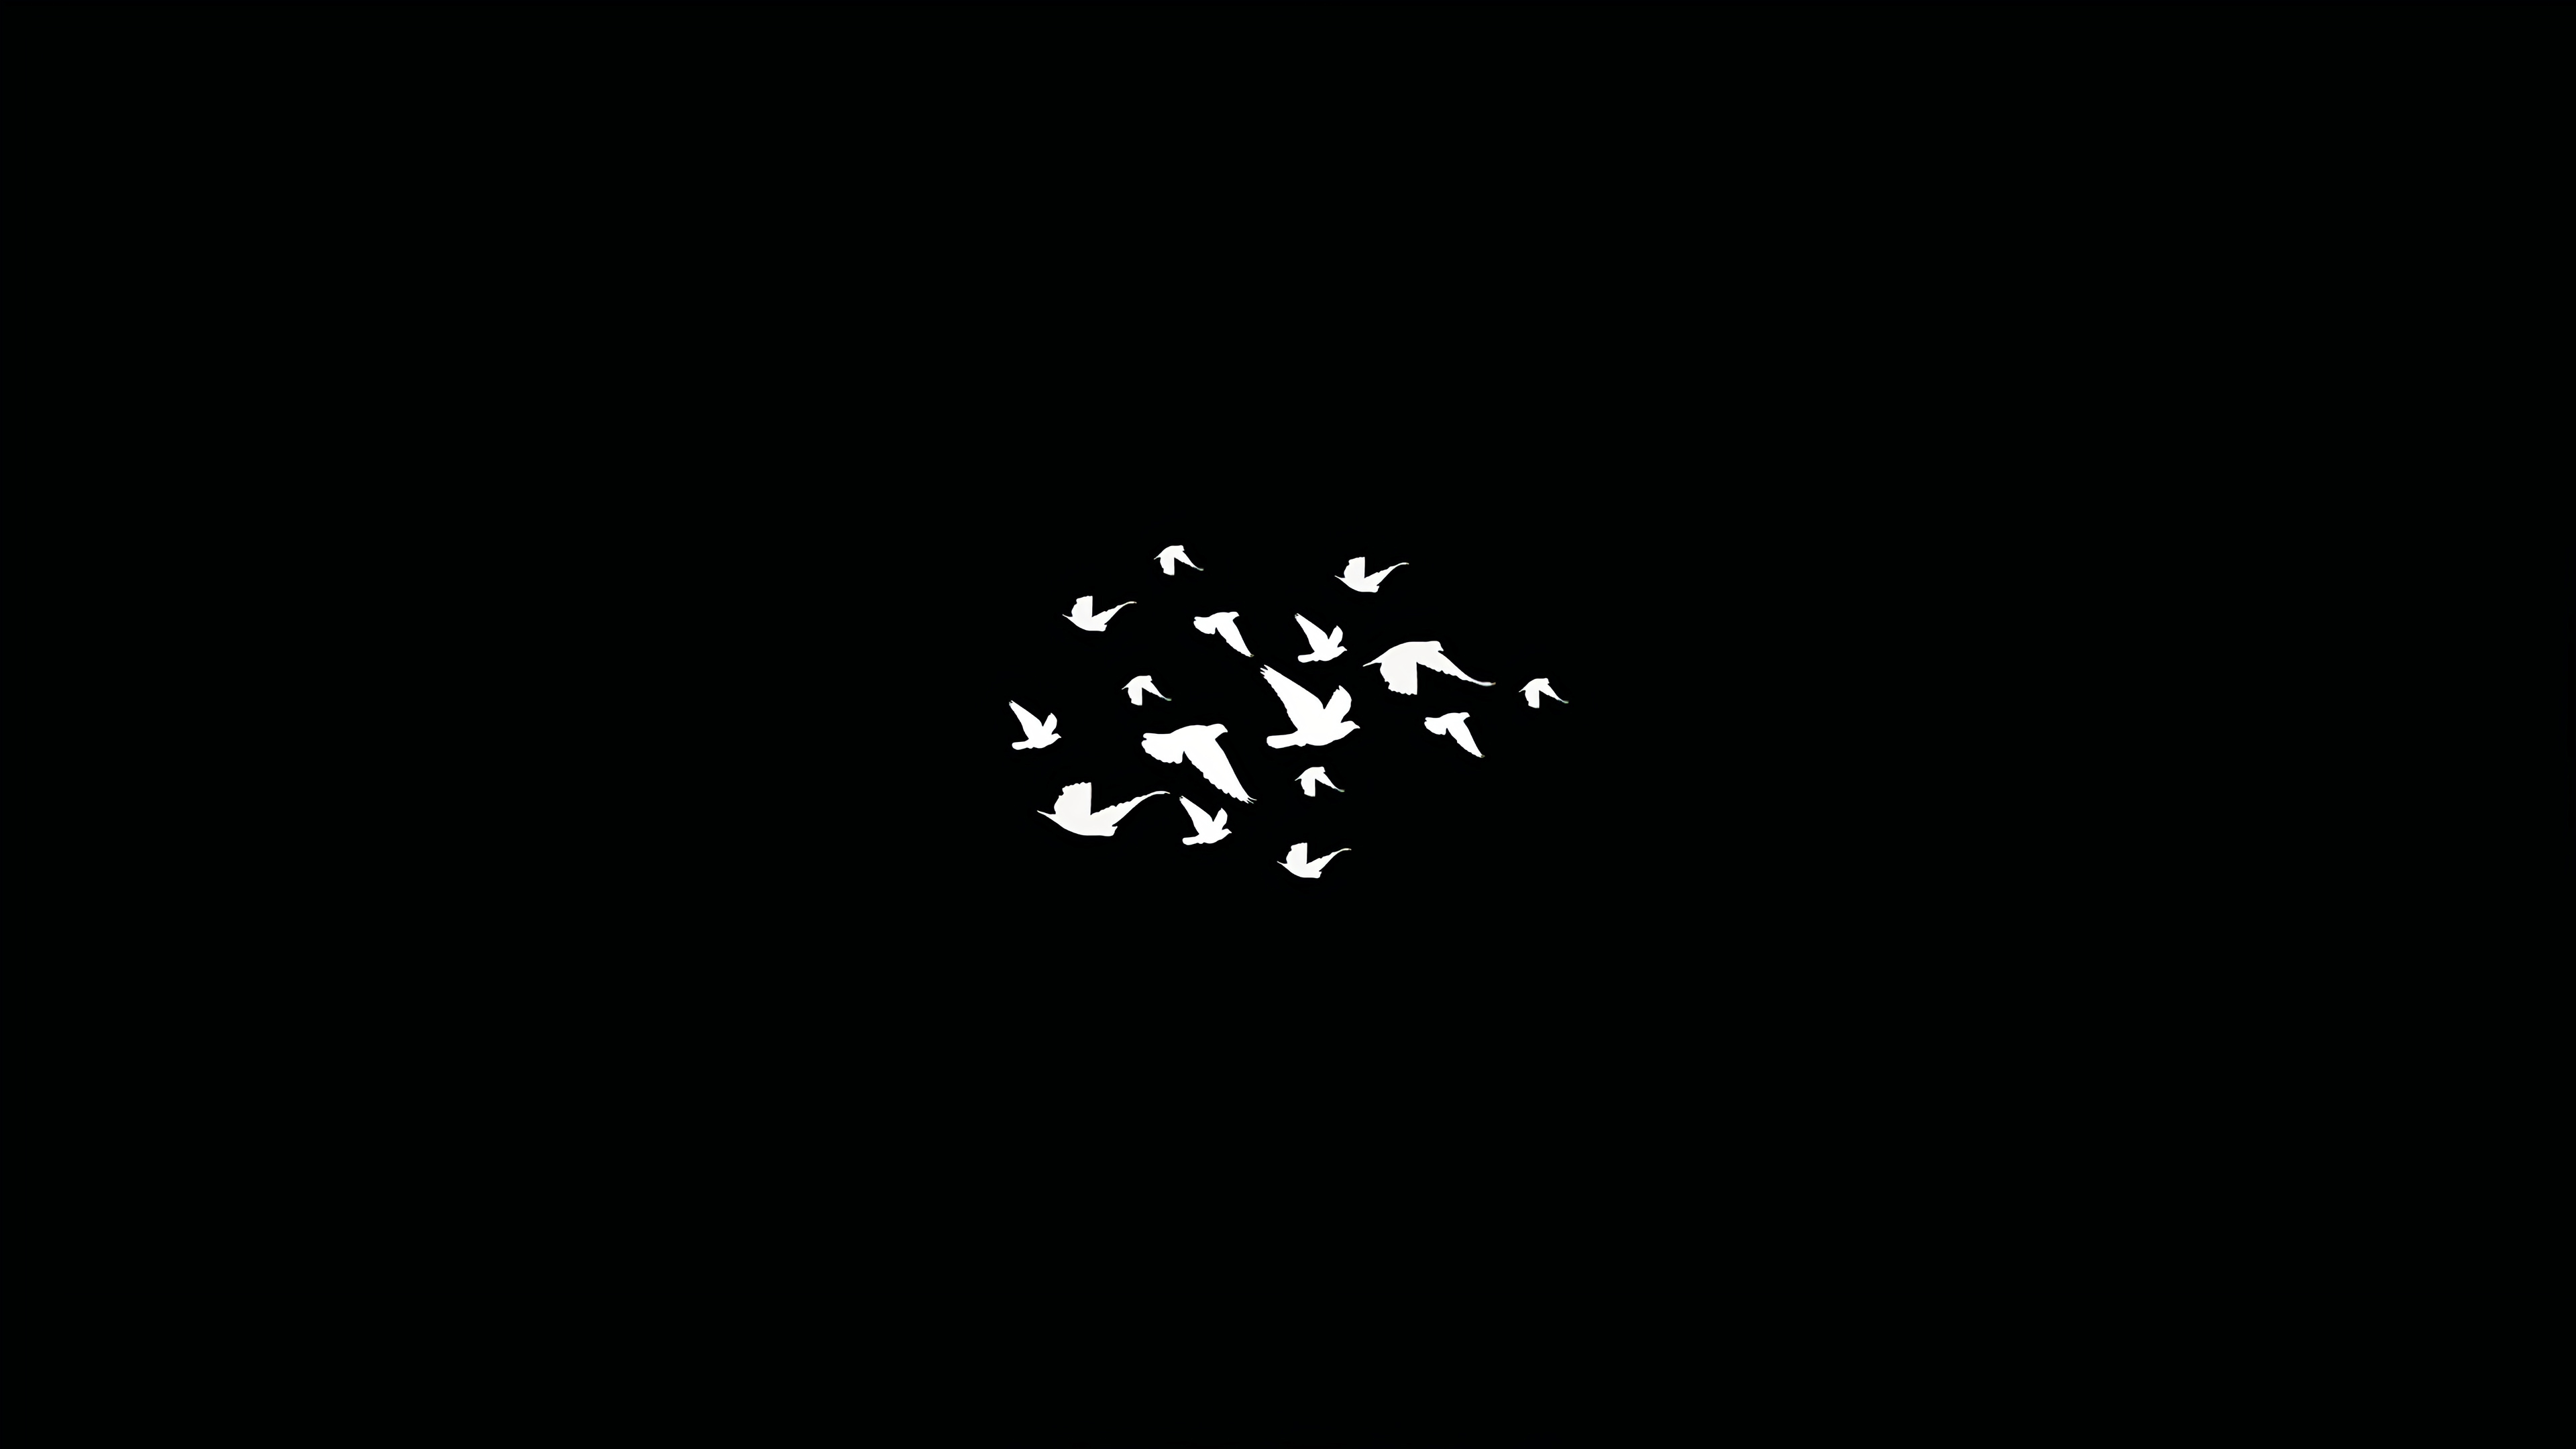 2048x1152 Birds Flying Minimalist Dark 4k 2048x1152 Resolution Hd